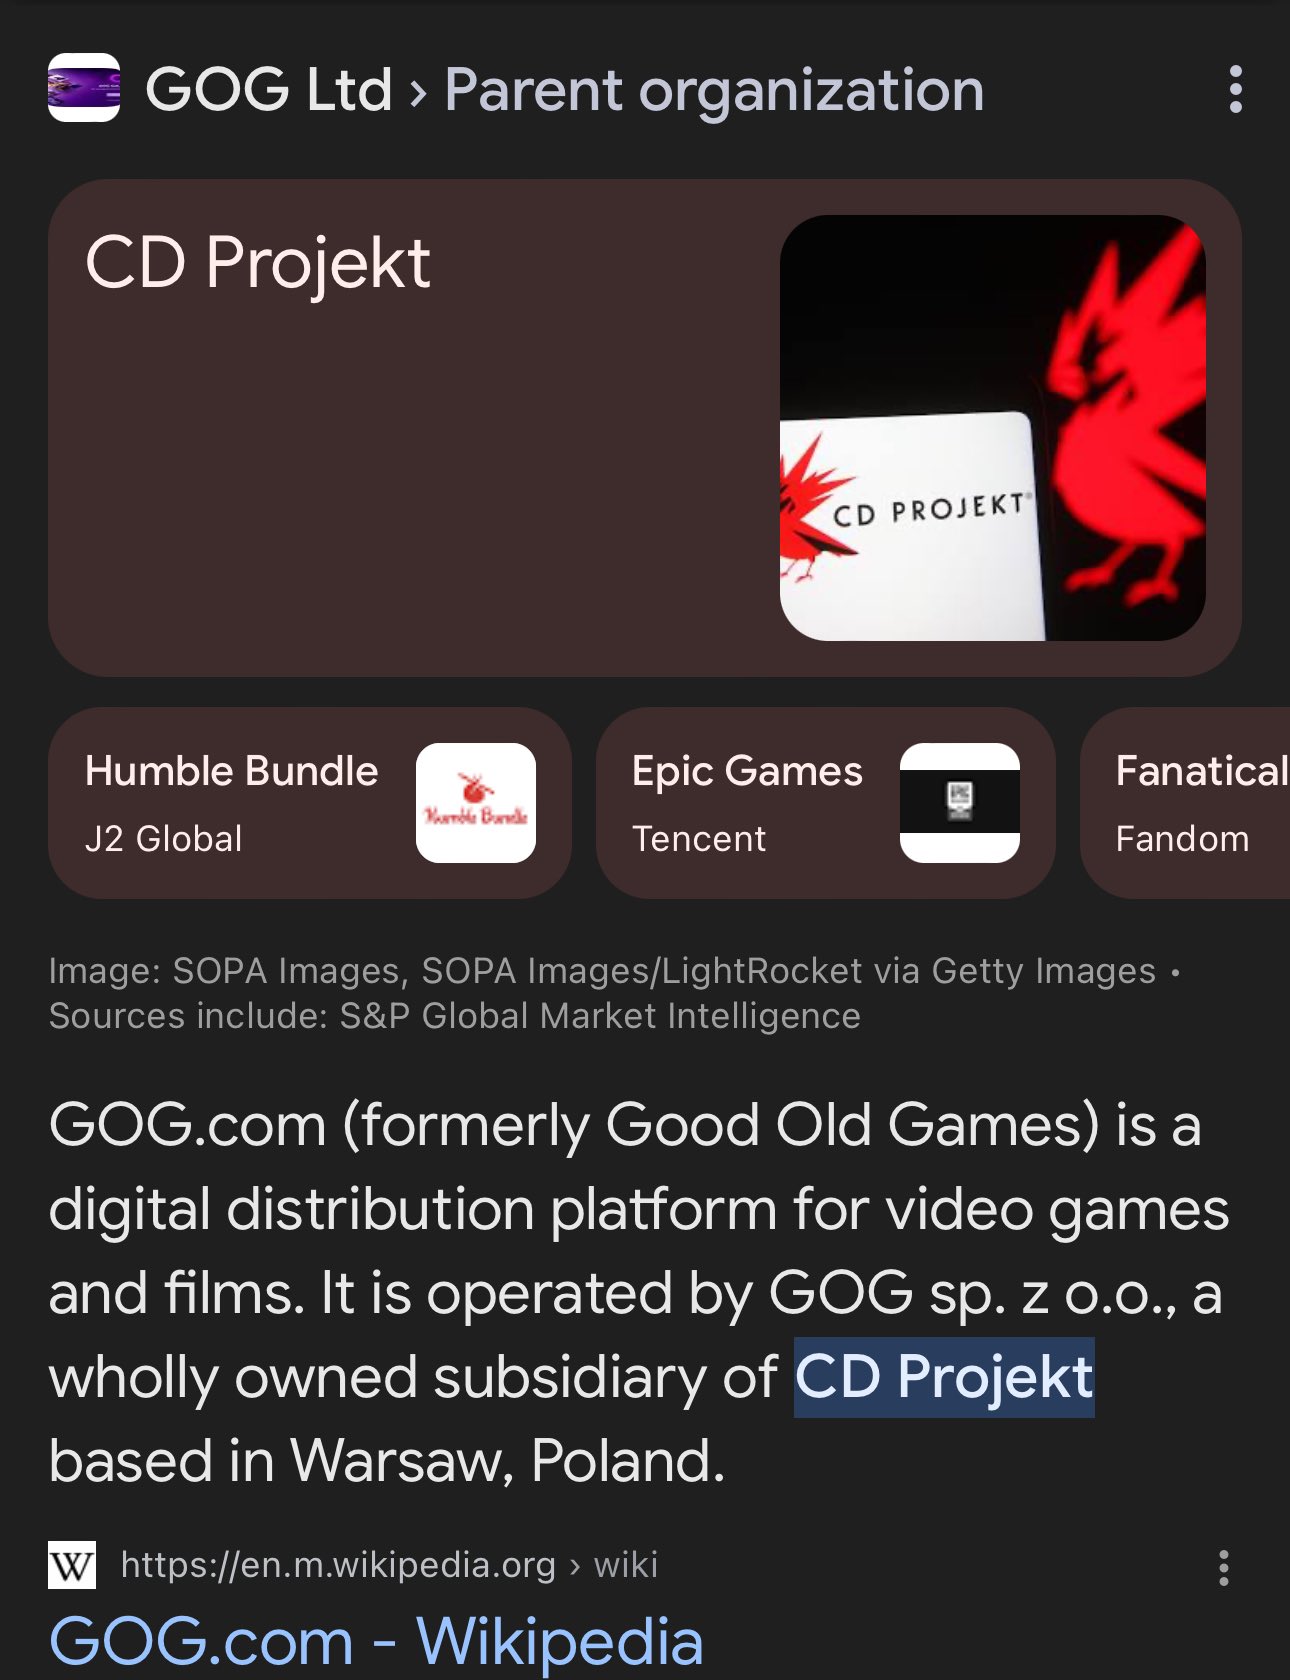 CD Projekt - Wikipedia